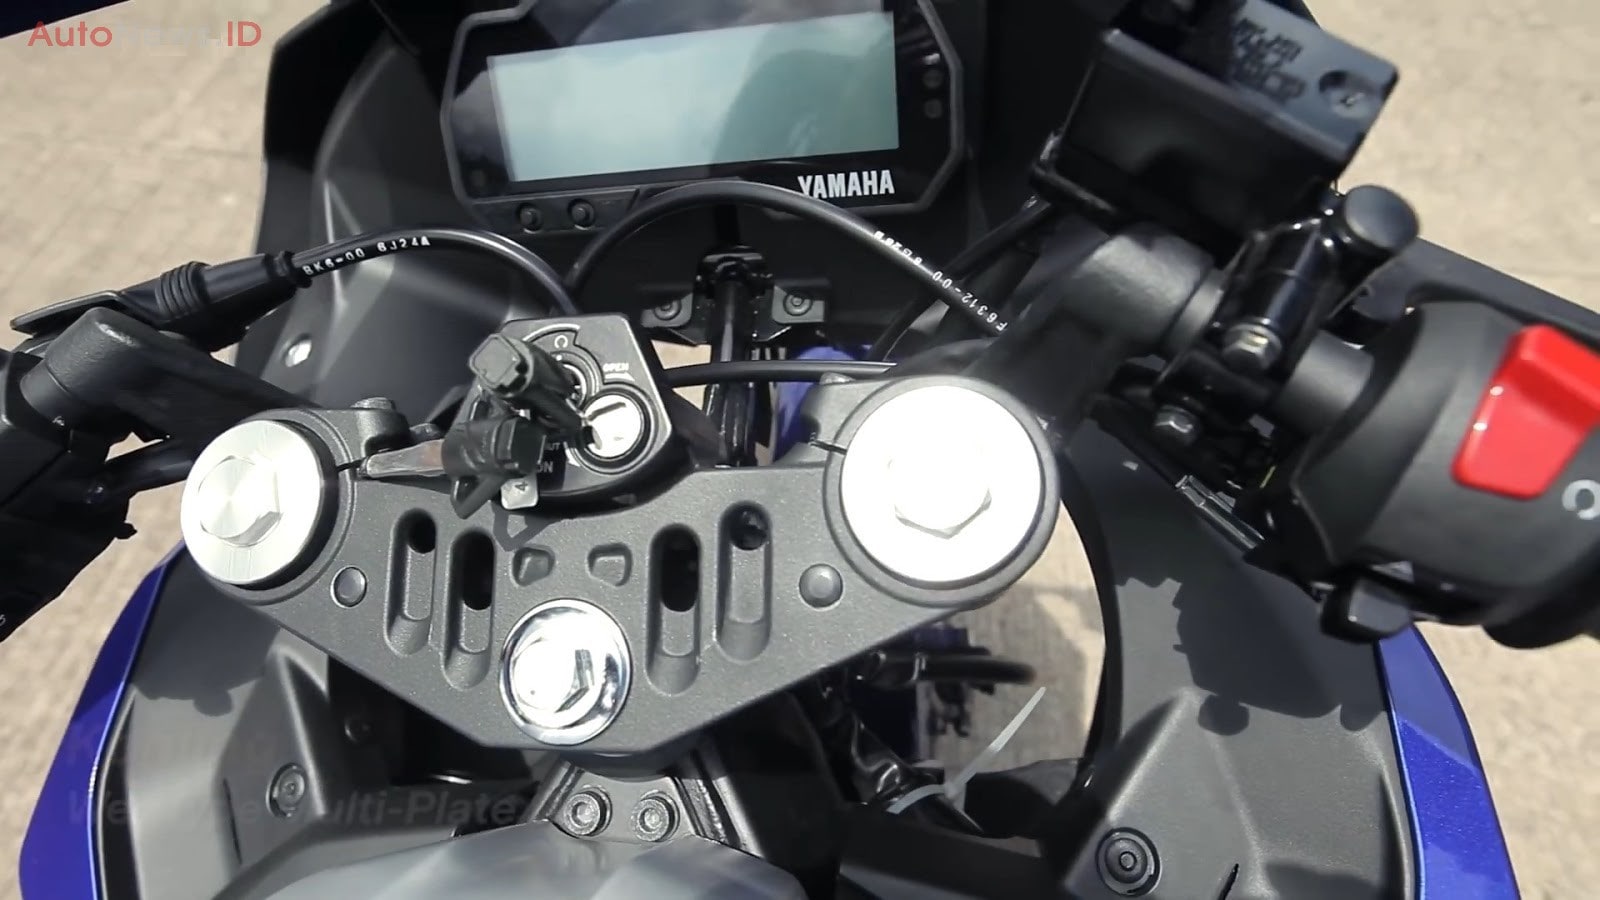 Gambar Yamaha R15 Modifikasi Lampu Belakang Pangeran Modifikasi